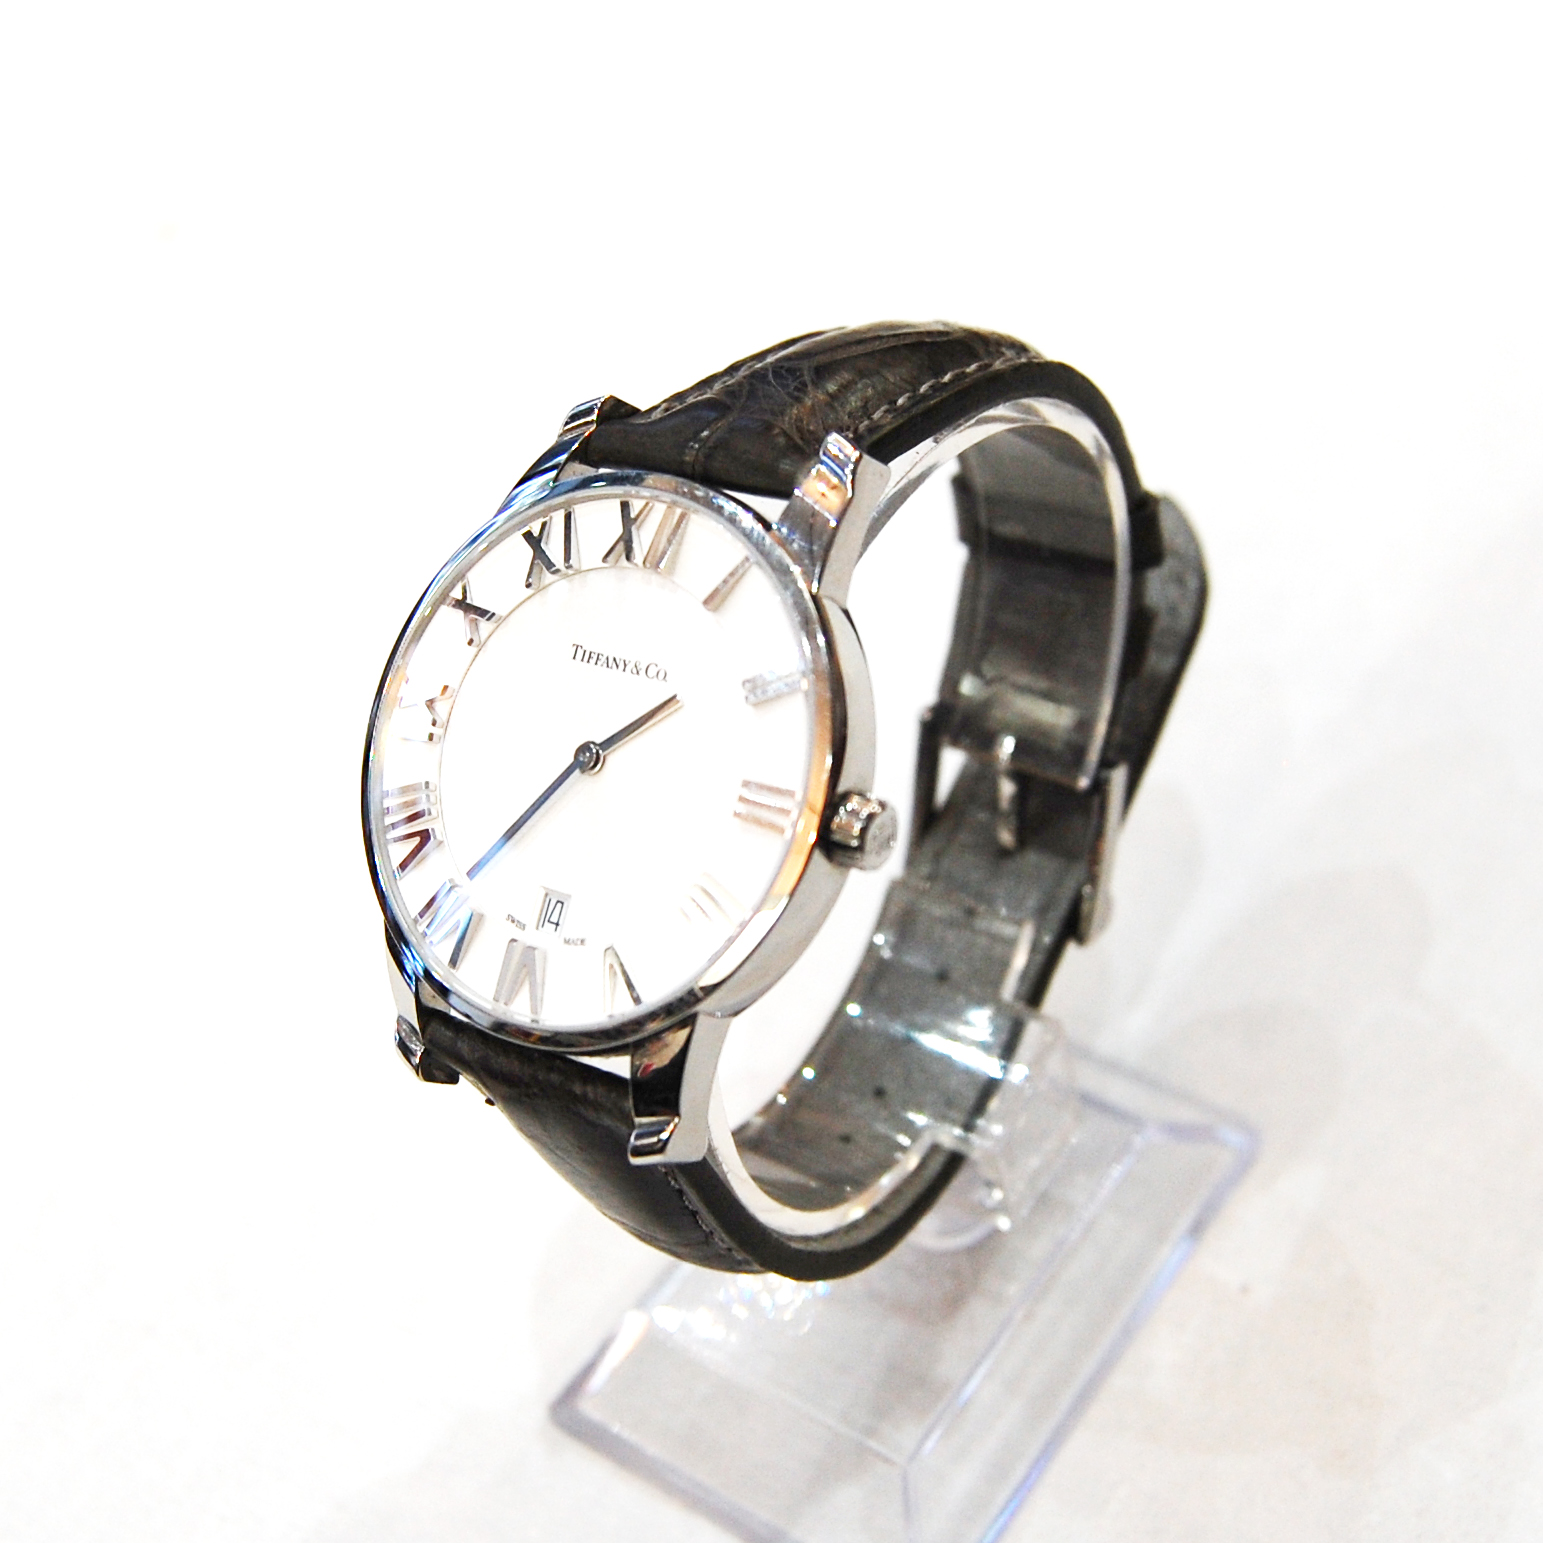 【Tiffany&Co】ティファニー 腕時計 革 腕時計(アナログ) 【年間ランキング6年連続受賞】